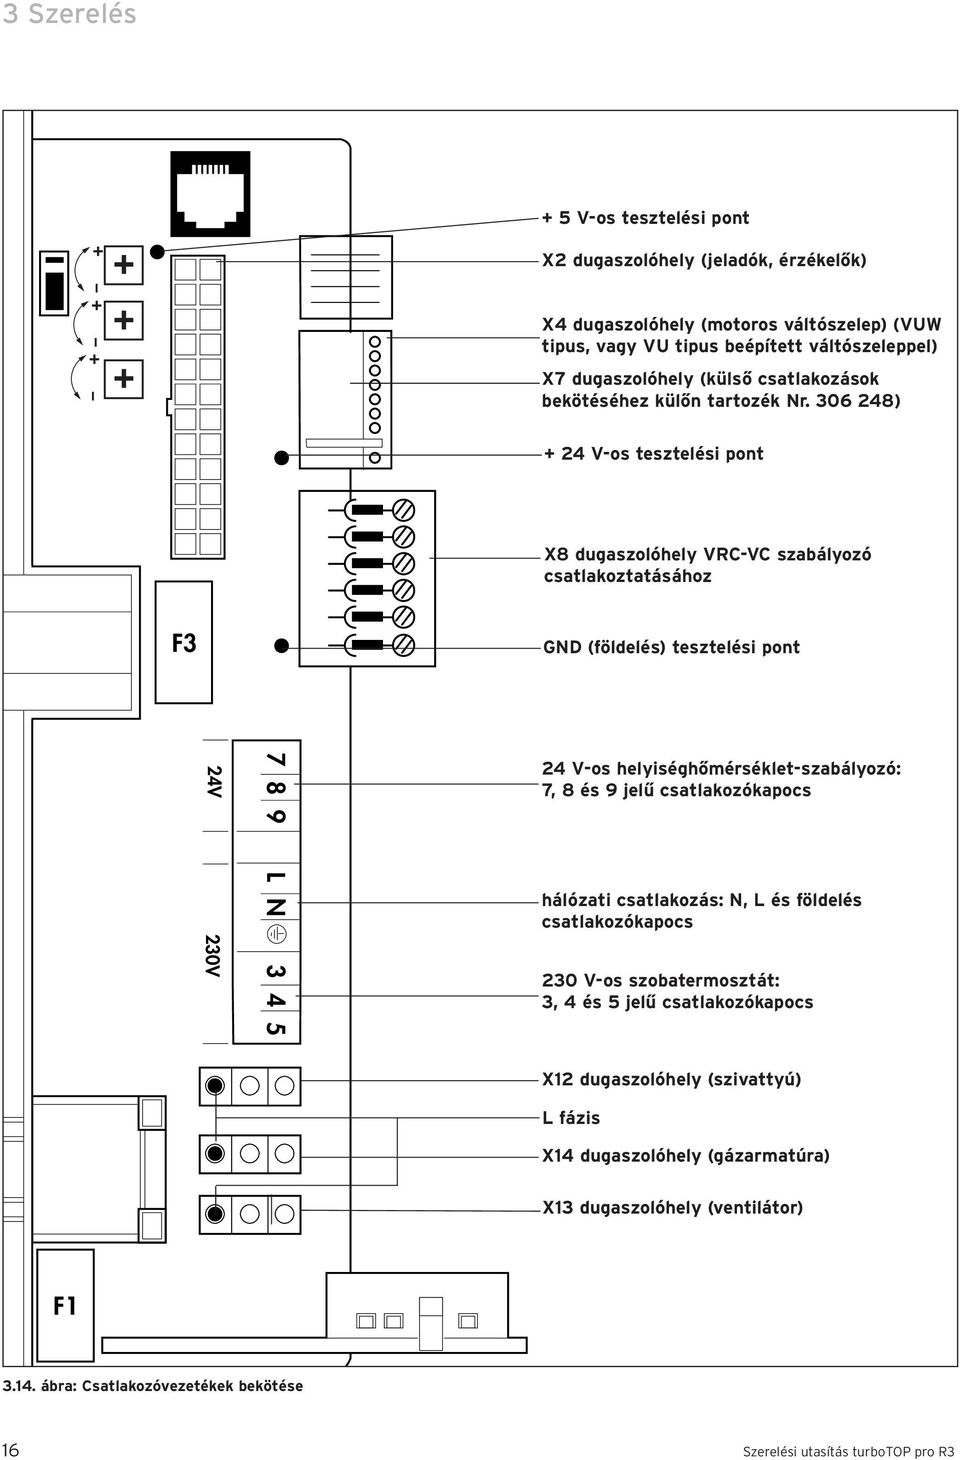 6 48) + 4 V-os tesztelési pont X8 dugaszolóhely VRC-VC szabályozó csatlakoztatásához F GND (földelés) tesztelési pont 4V V 7 8 9 L N 4 5 4 V-os helyiséghőmérséklet-szabályozó: 7, 8 és